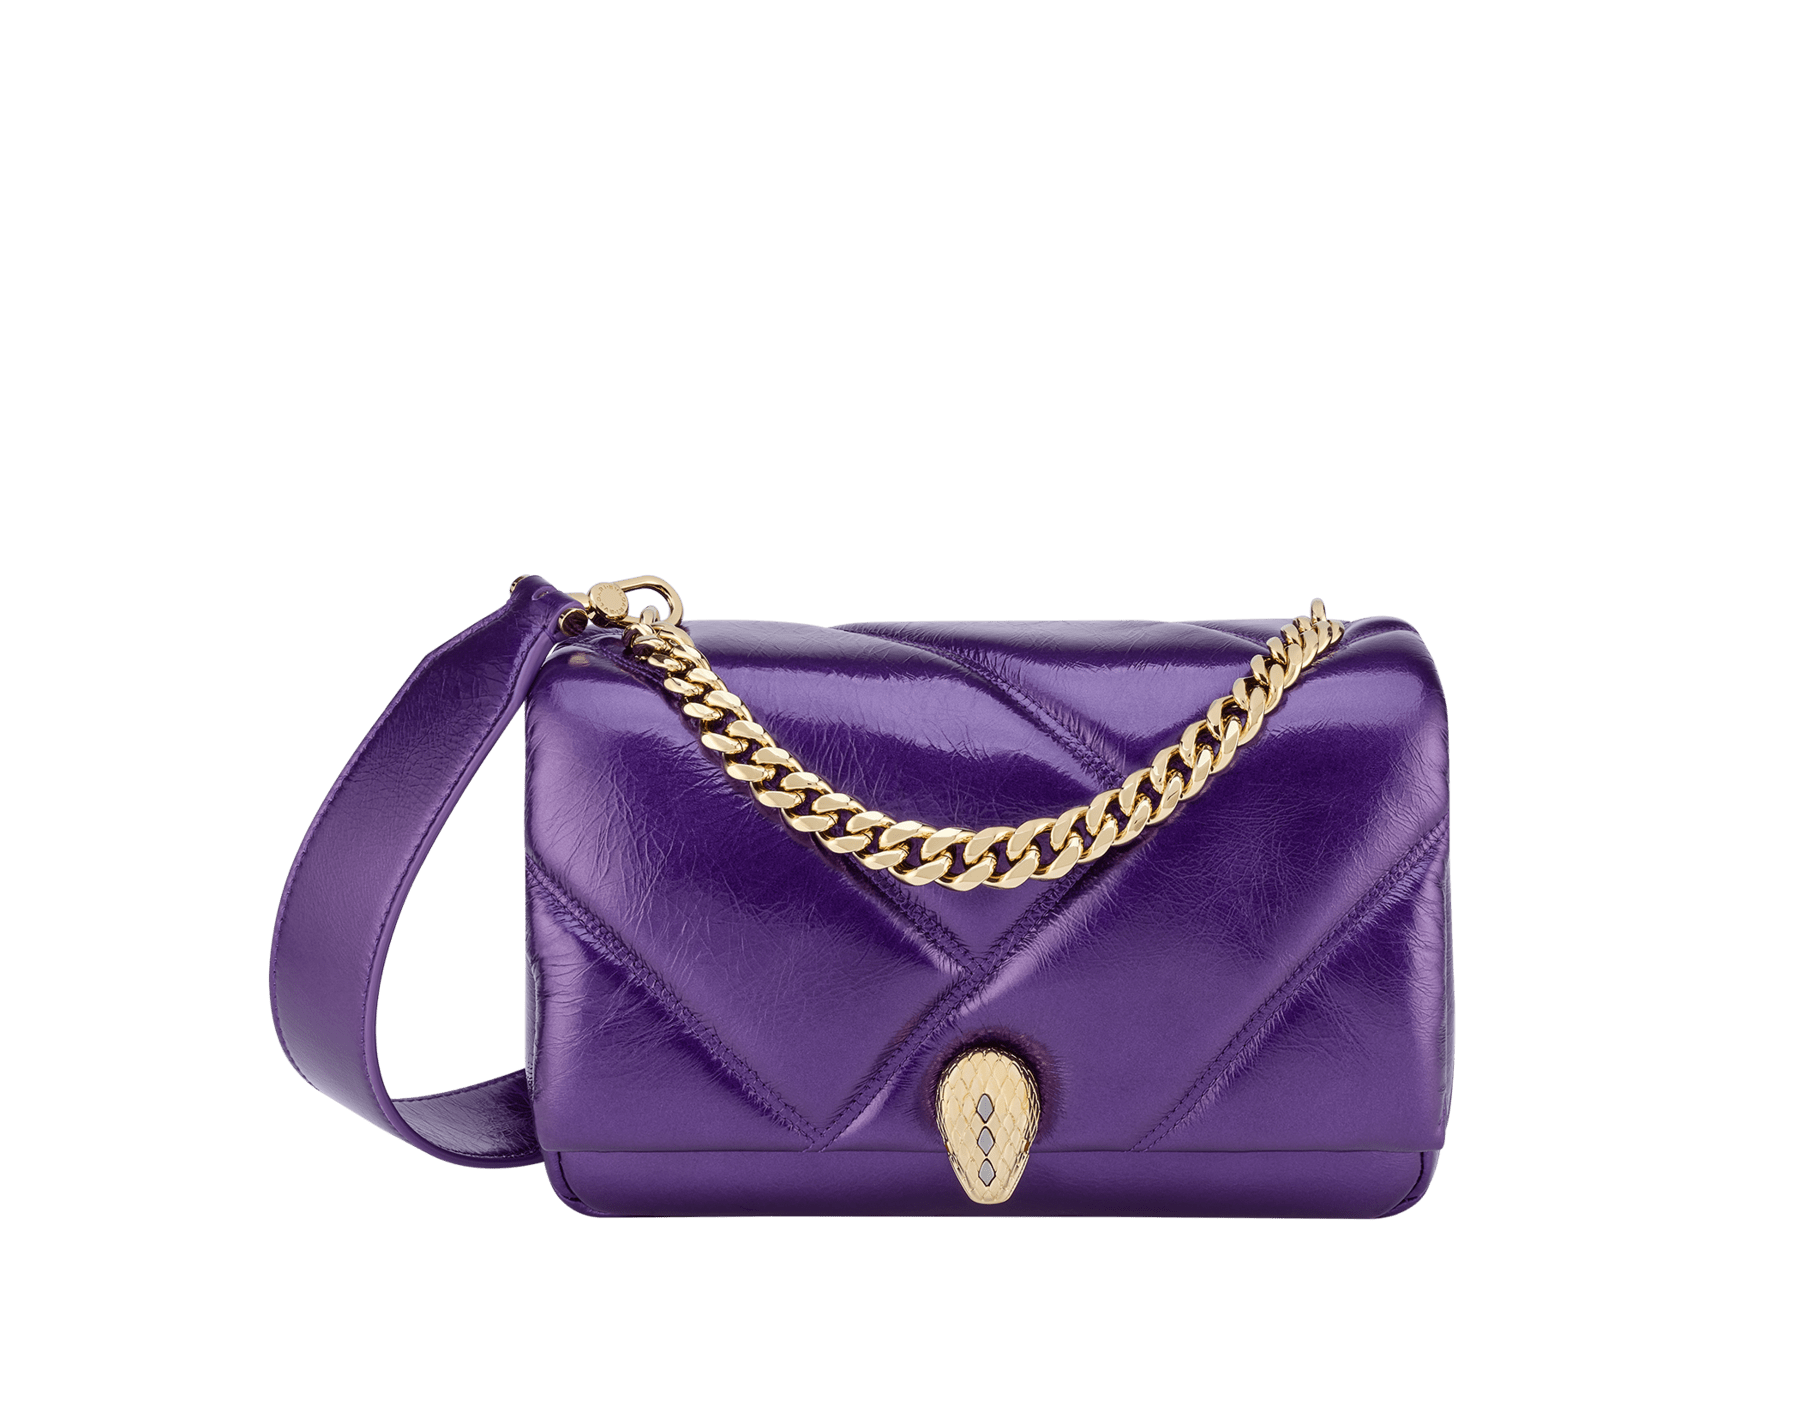 The Pearl - Crossbody Bag - Black/Gold/Lavender in Nappa